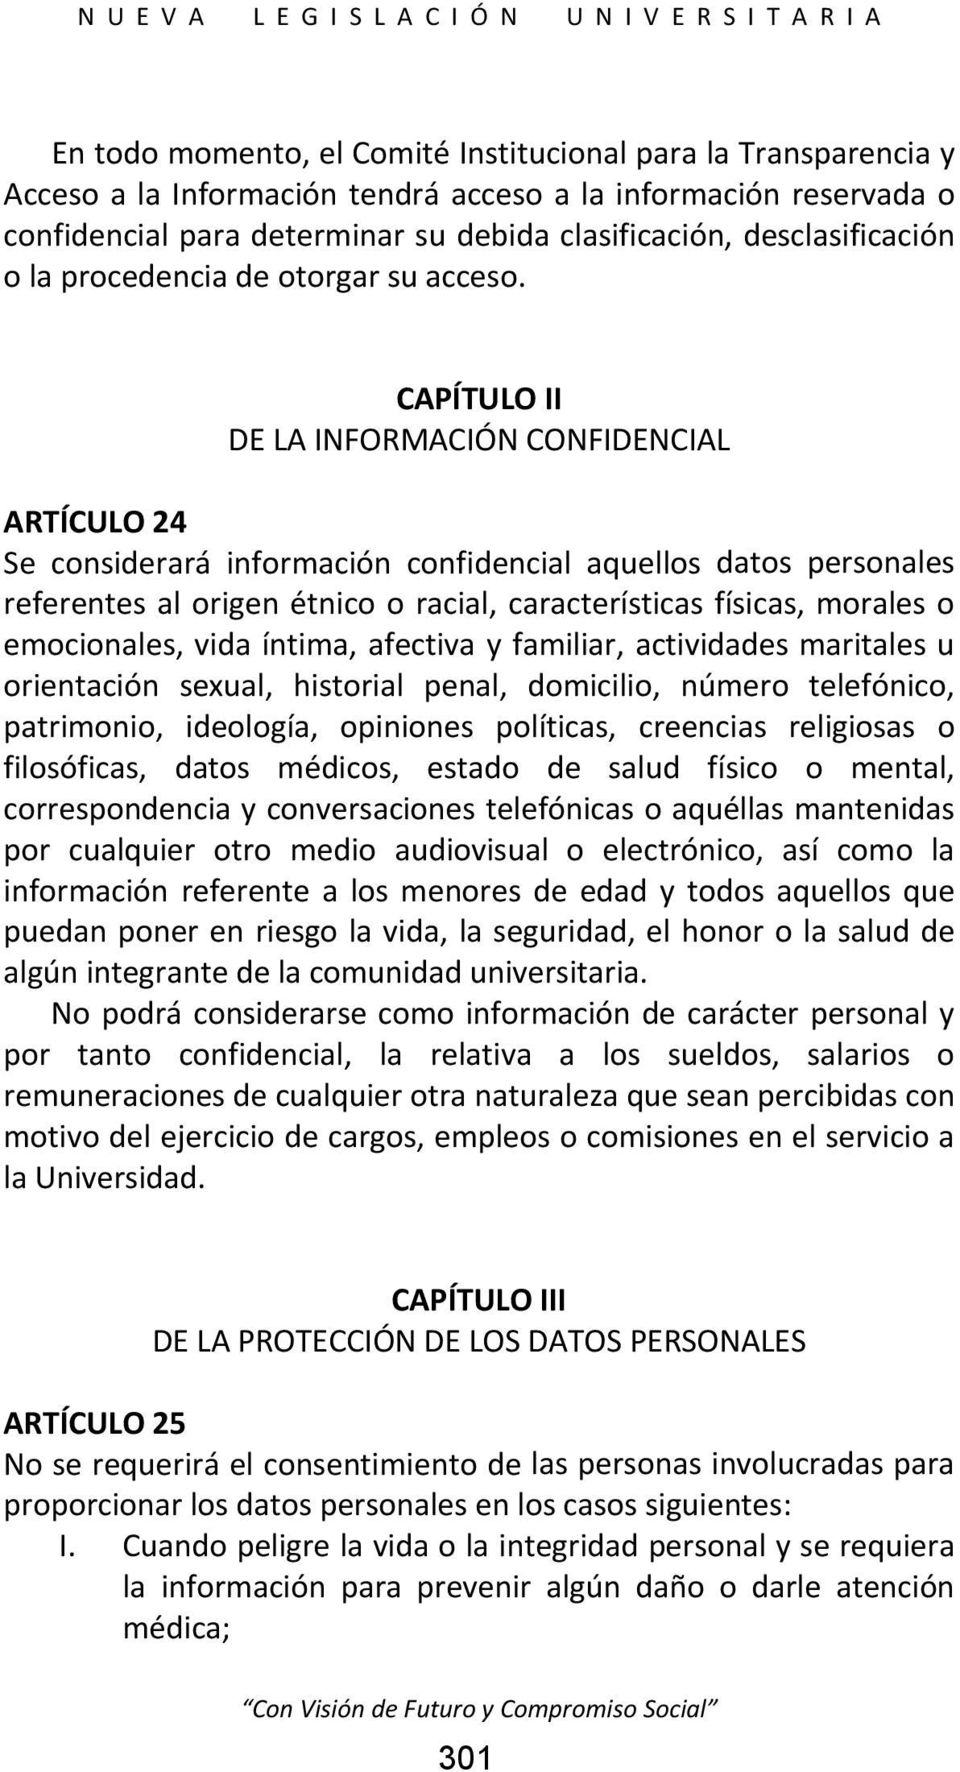 CAPÍTULO II DE LA INFORMACIÓN CONFIDENCIAL ARTÍCULO 24 Se considerará información confidencial aquellos datos personales referentes al origen étnico o racial, características físicas, morales o